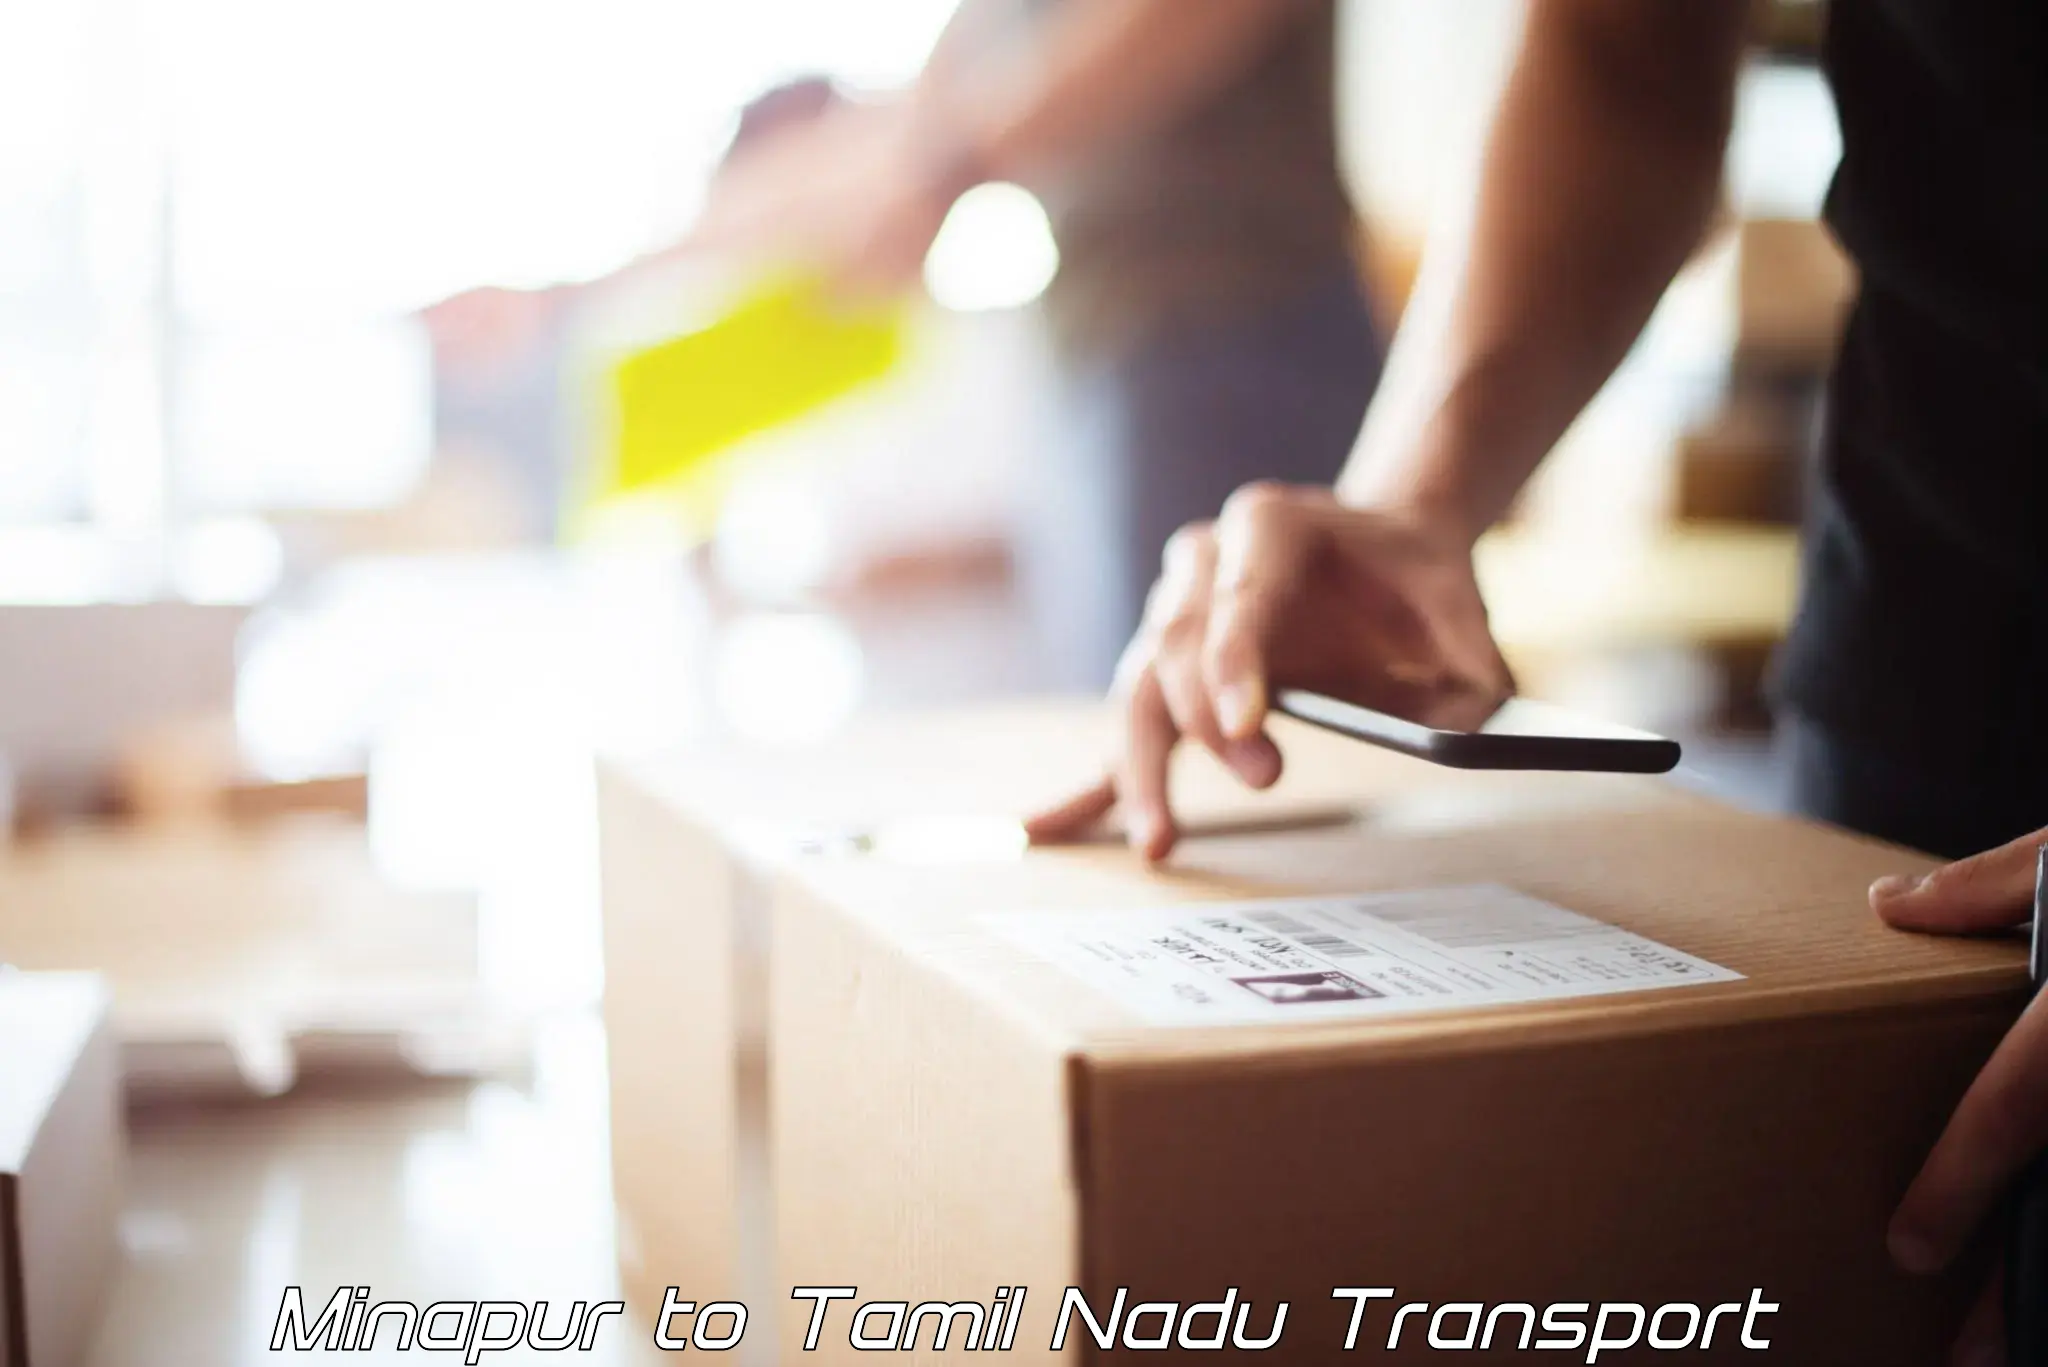 Transport in sharing Minapur to Narikkudi